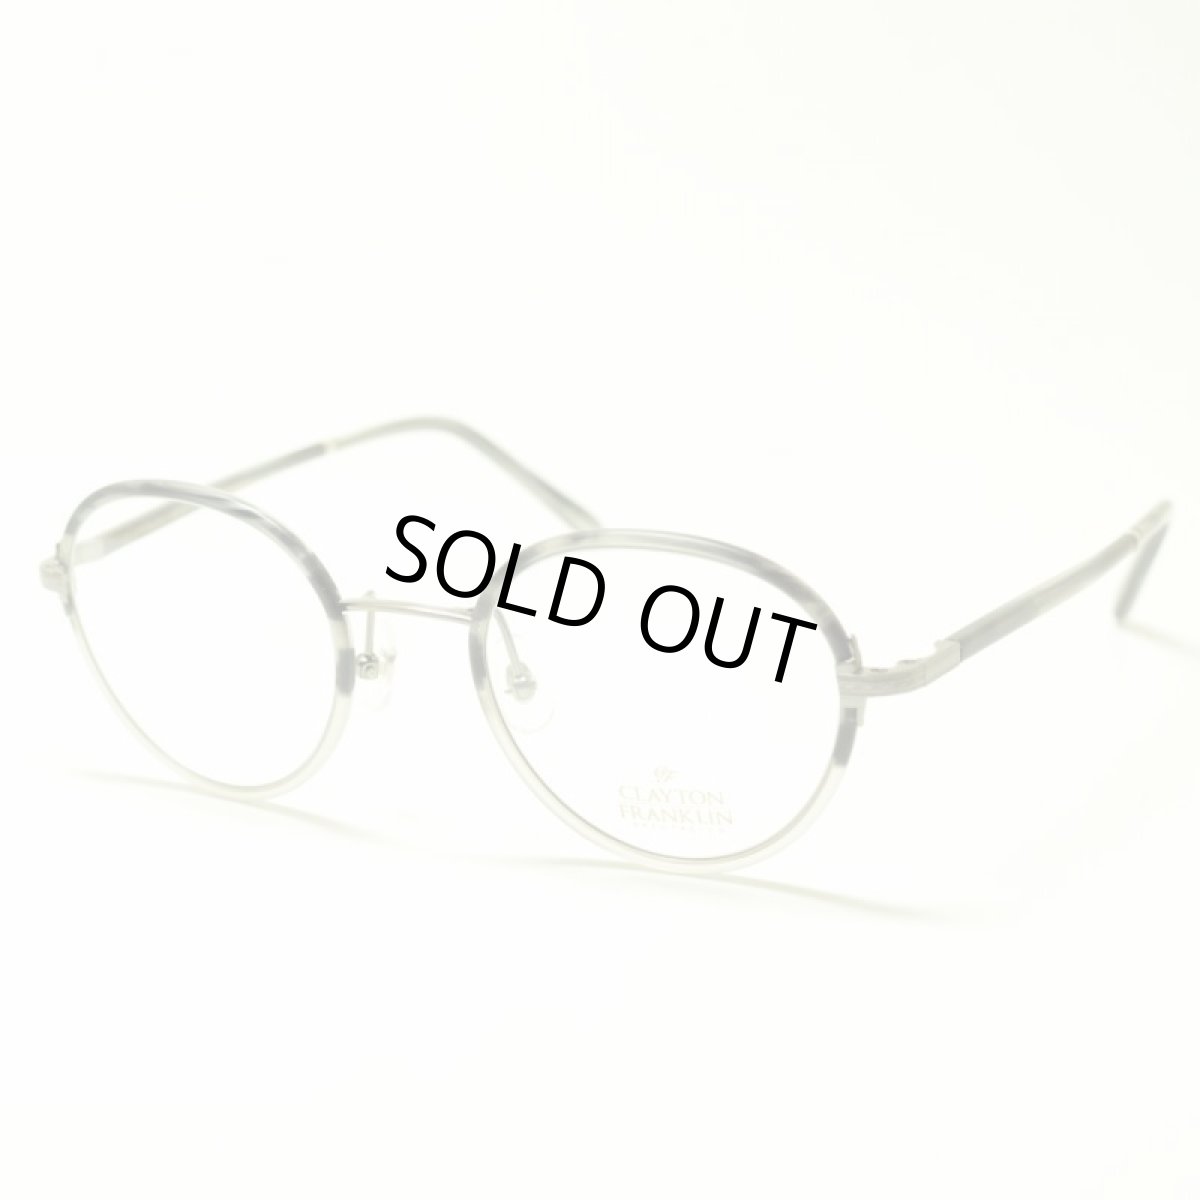 画像1: CLAYTON FRANKLIN クレイトンフランクリン 618 MGRH マットグレーハーフ メガネ 眼鏡 めがね メンズ レディース おしゃれ ブランド 人気 おすすめ フレーム 流行り 度付き レンズ (1)